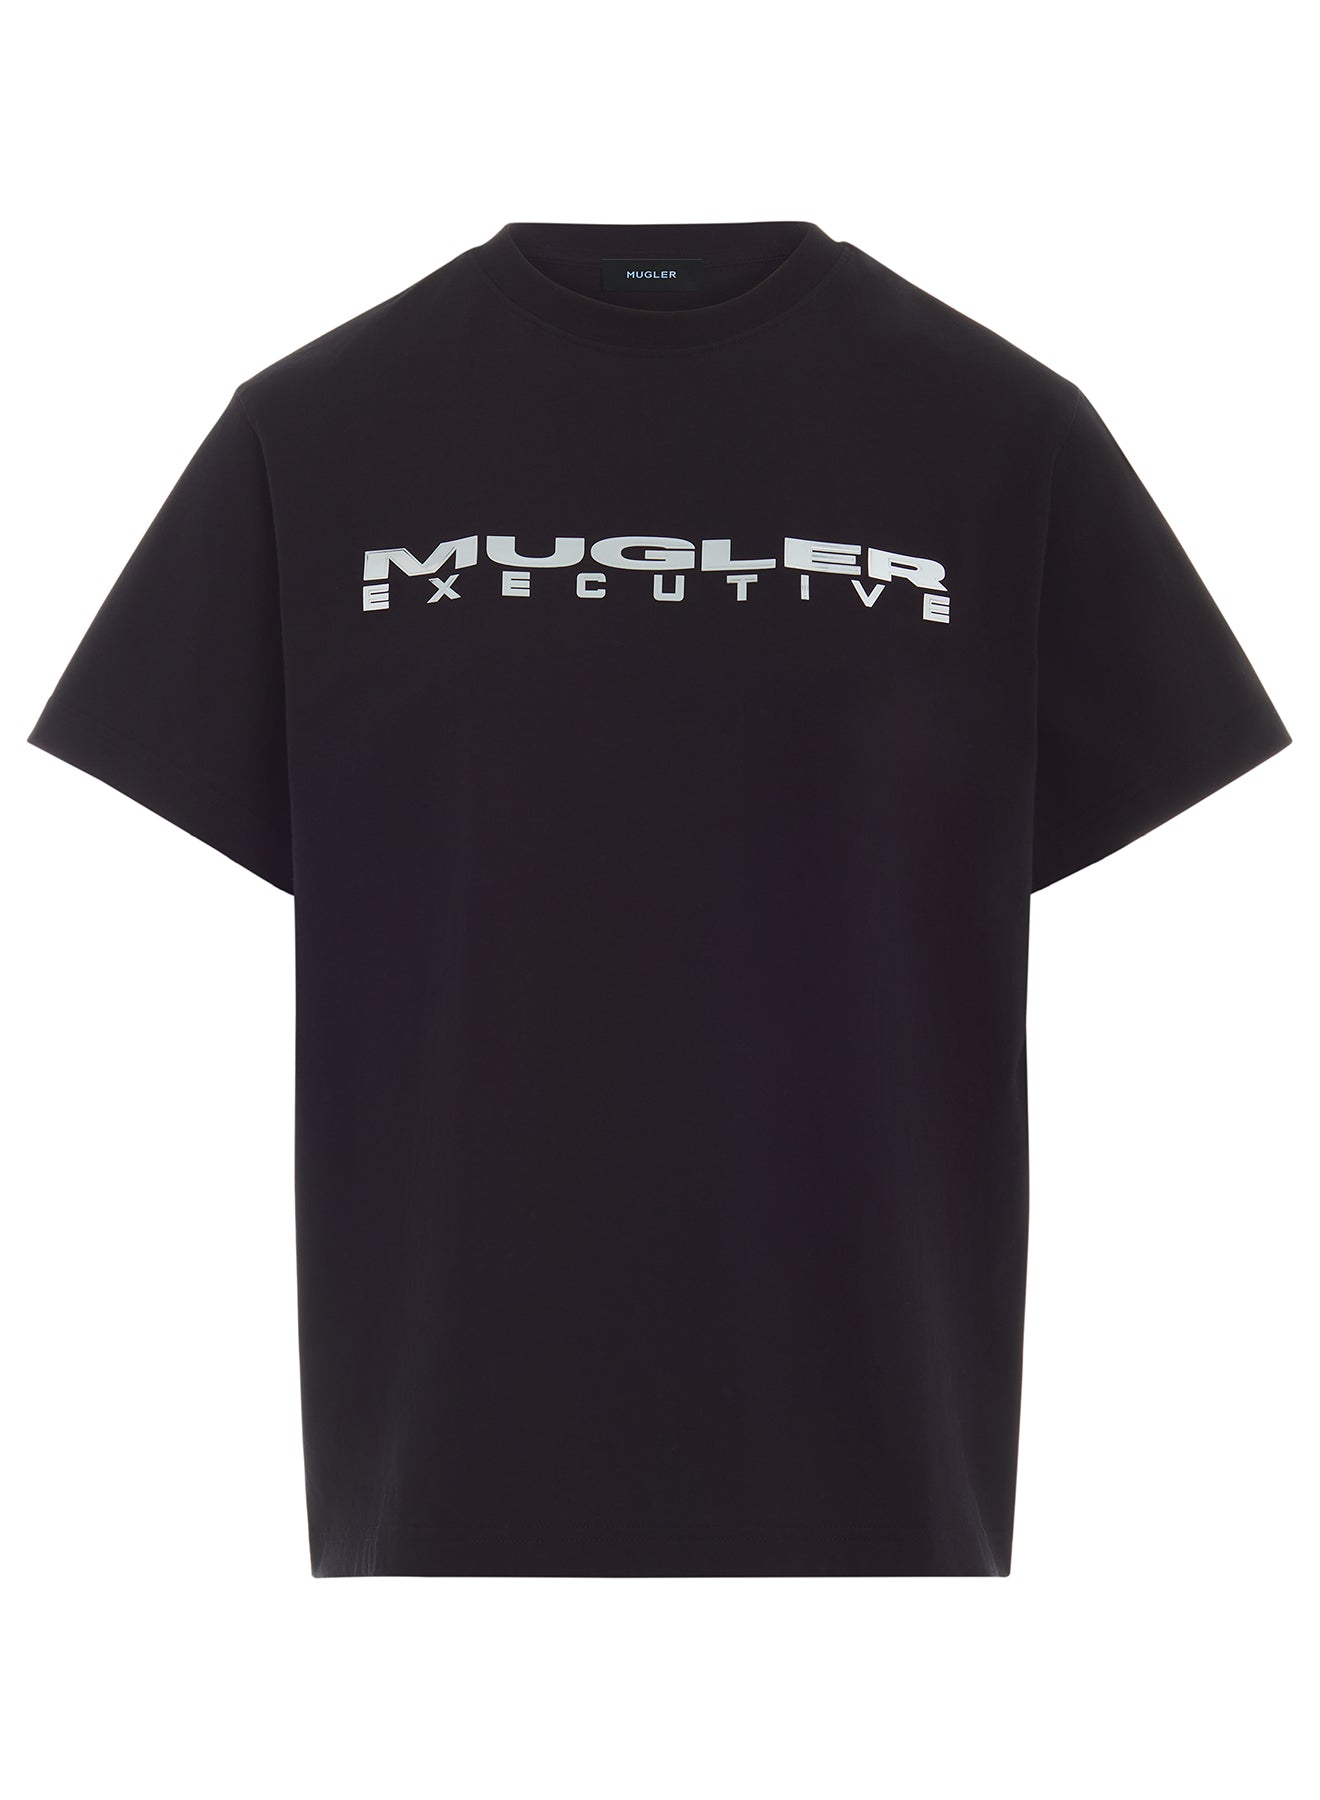 black mugler executive t-shirt